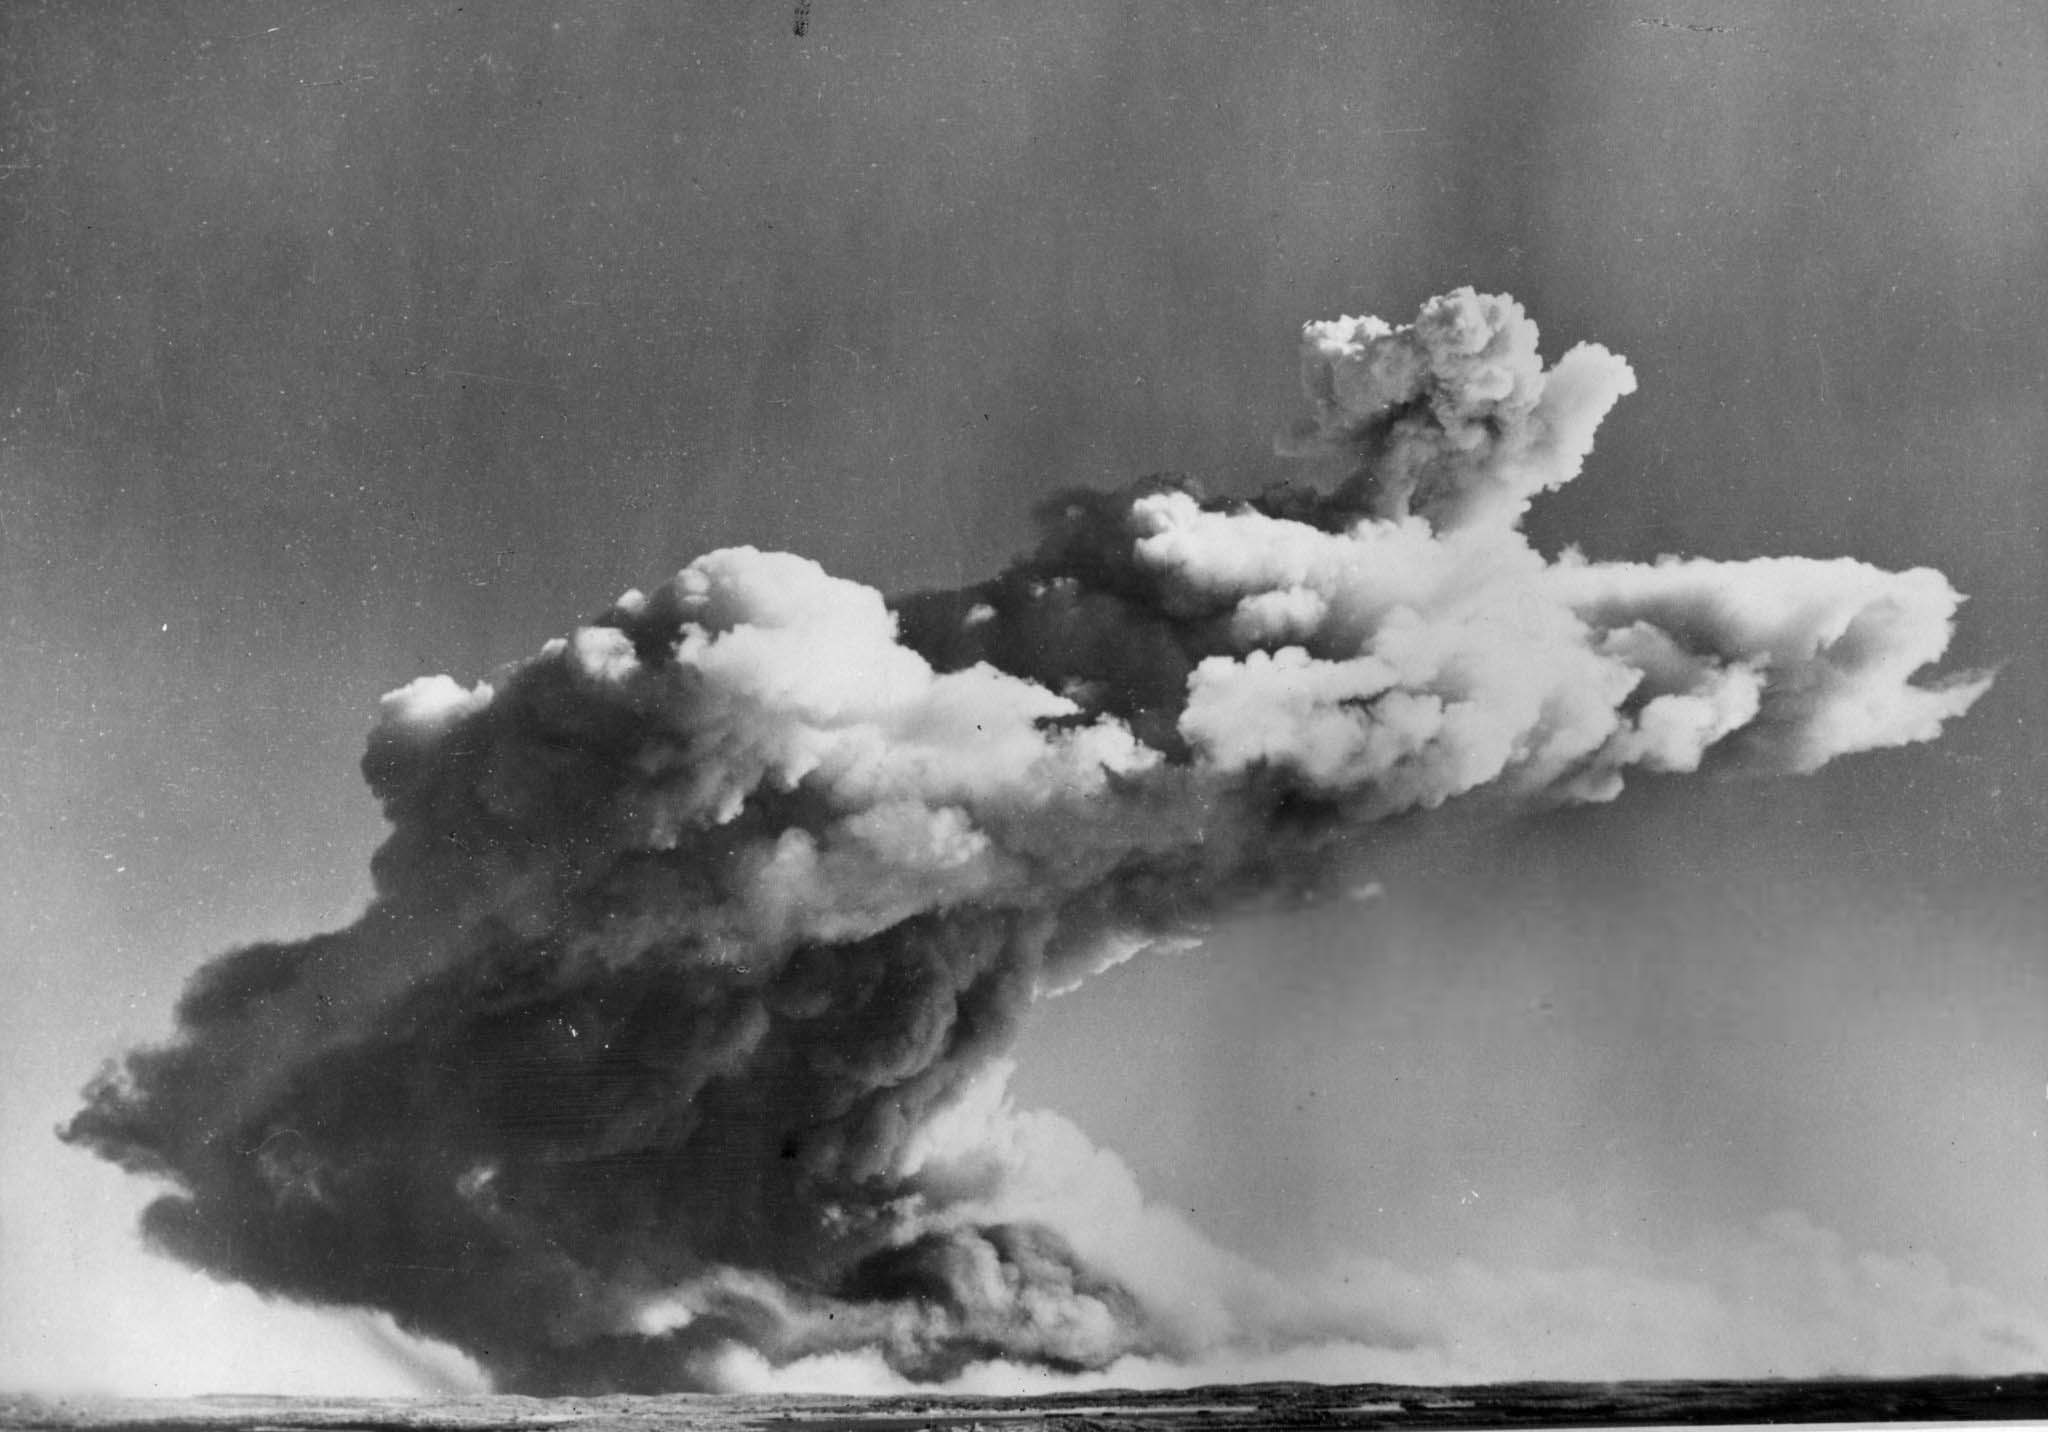 plutonium bomb test